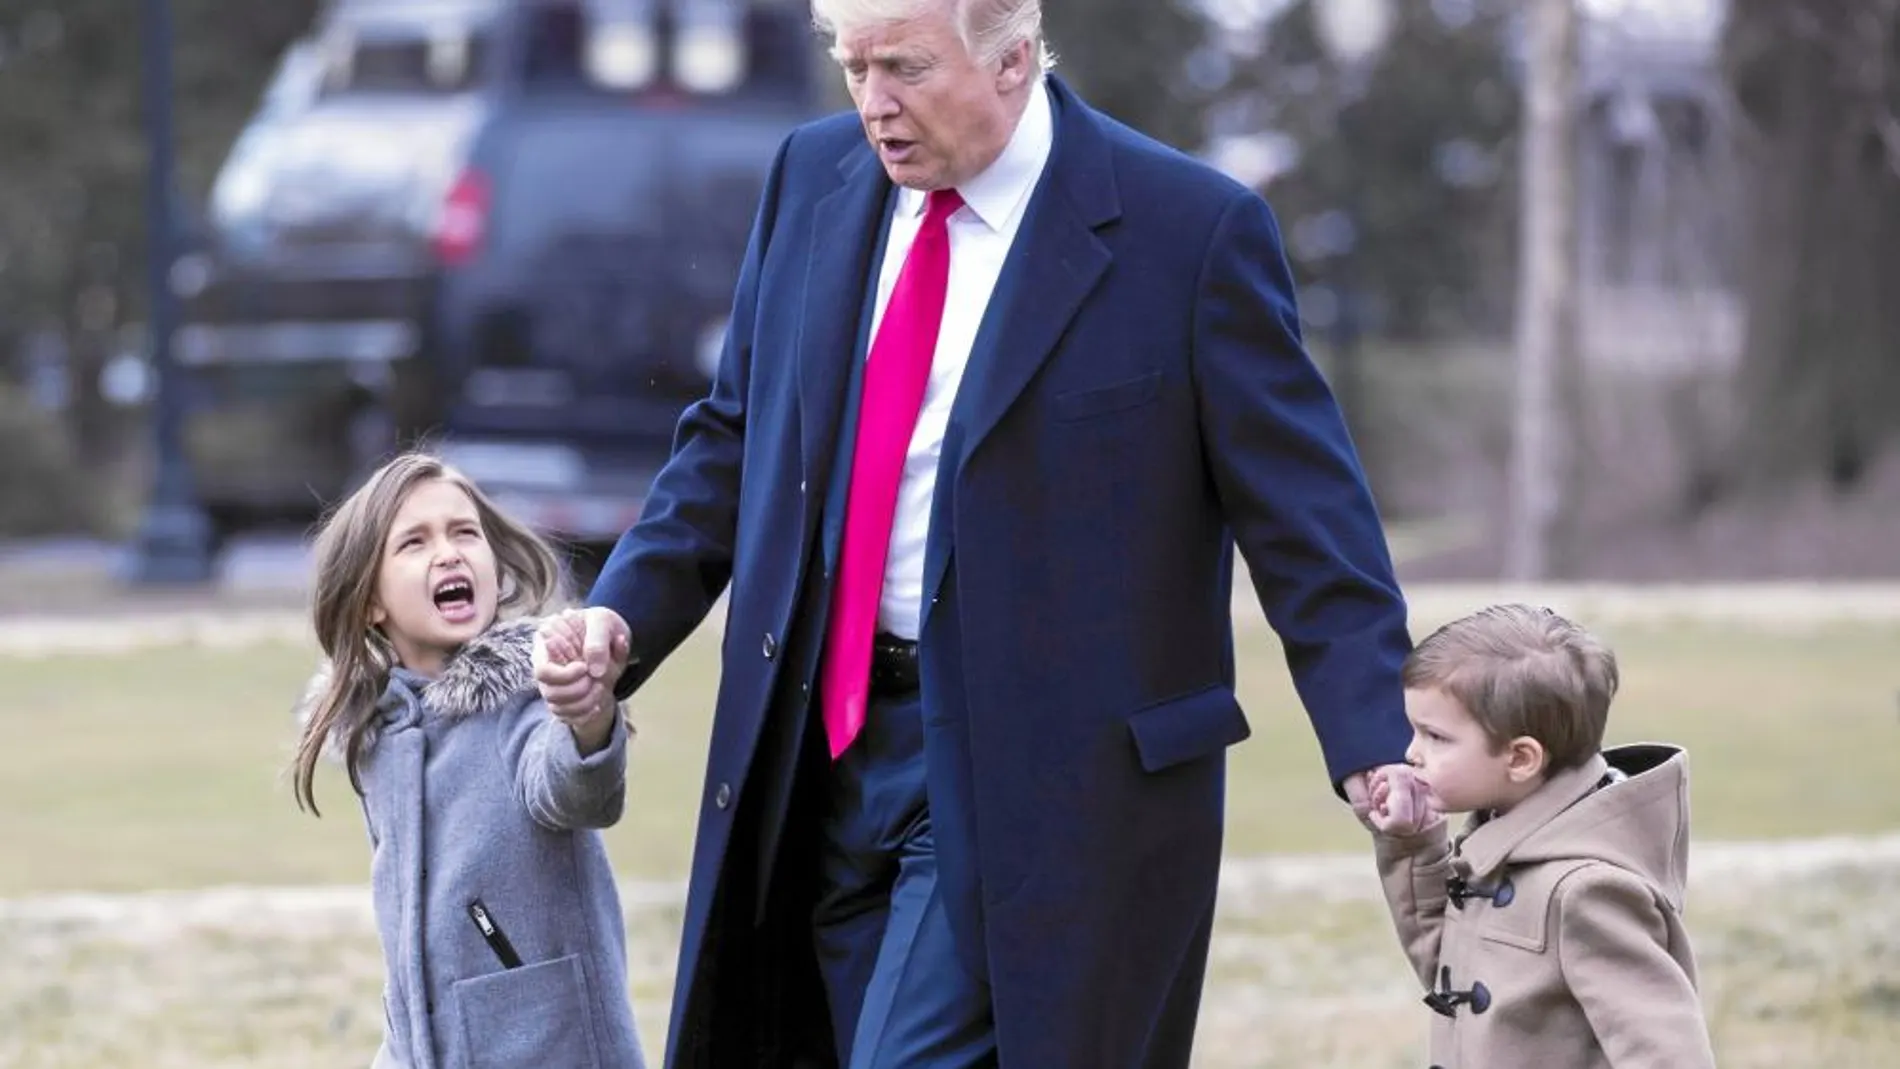 El presidente de EE UU, Donald Trump, camina junto a sus nietos Arabella y Joseph Kushner, en la Casa Blanca